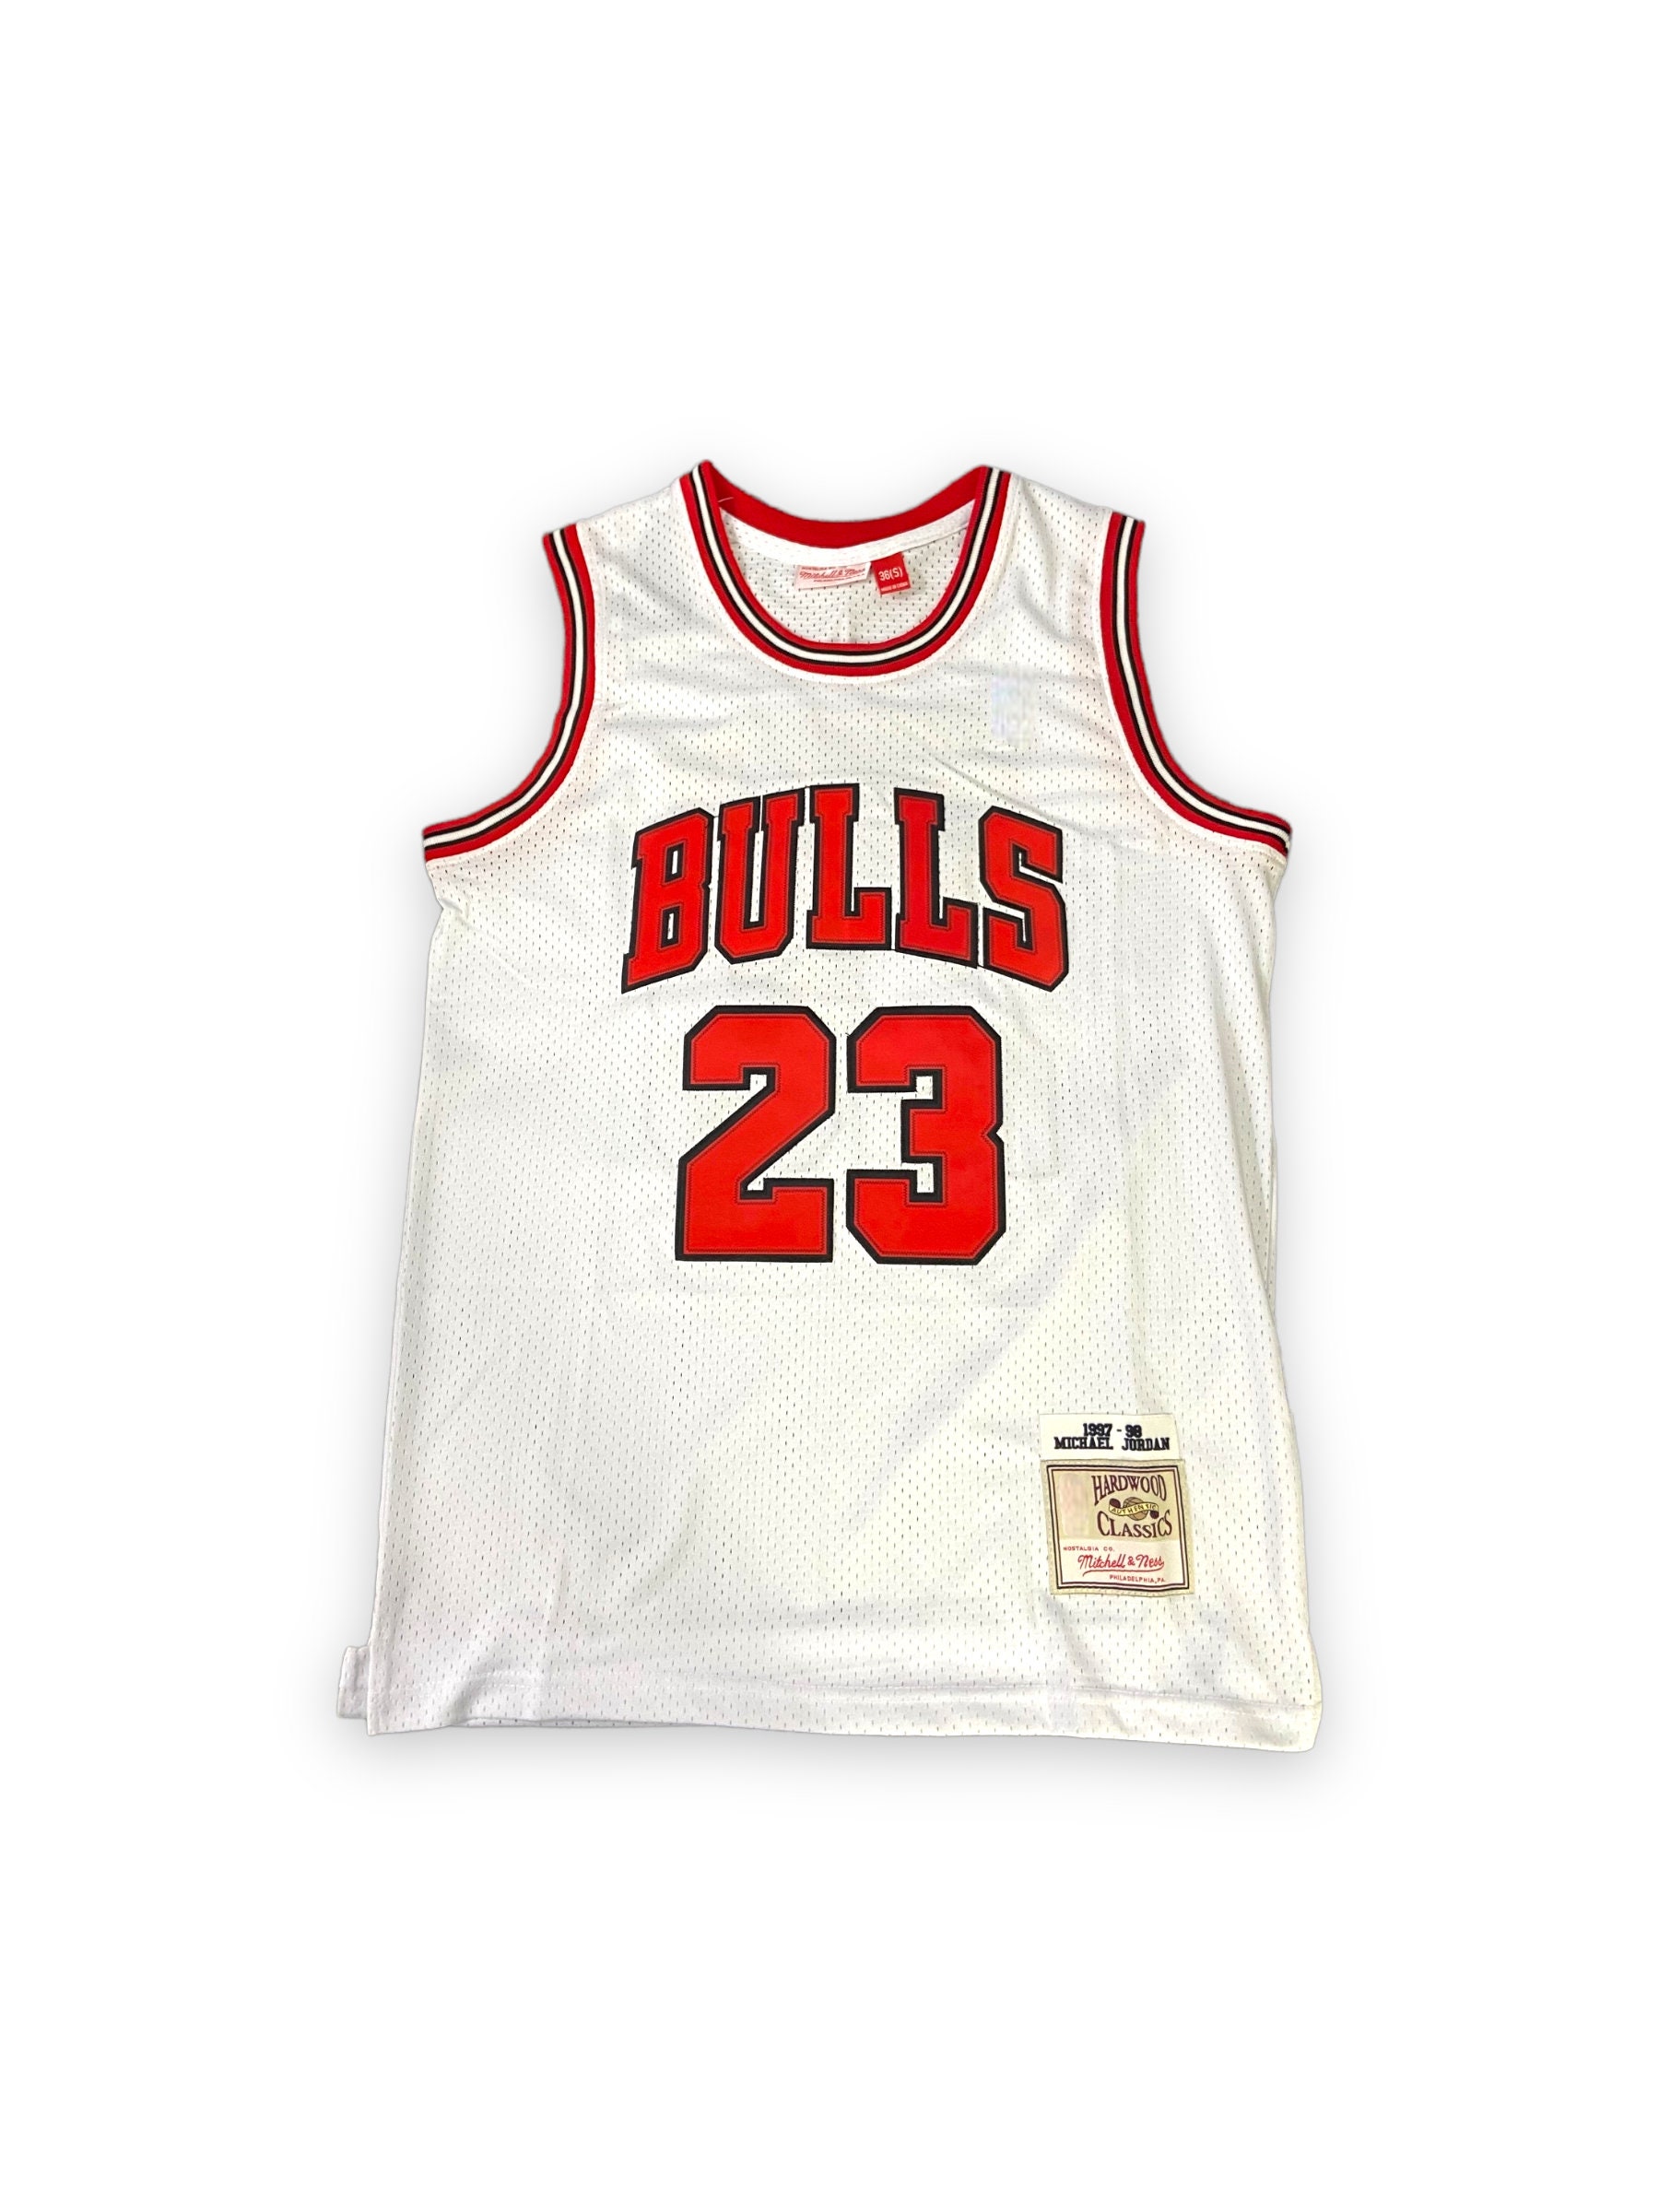 BULLS Chicago Bulls Air Jordan Chaud Haut NBA Maillot Basketball Jersey Kobé Xi Lebron 